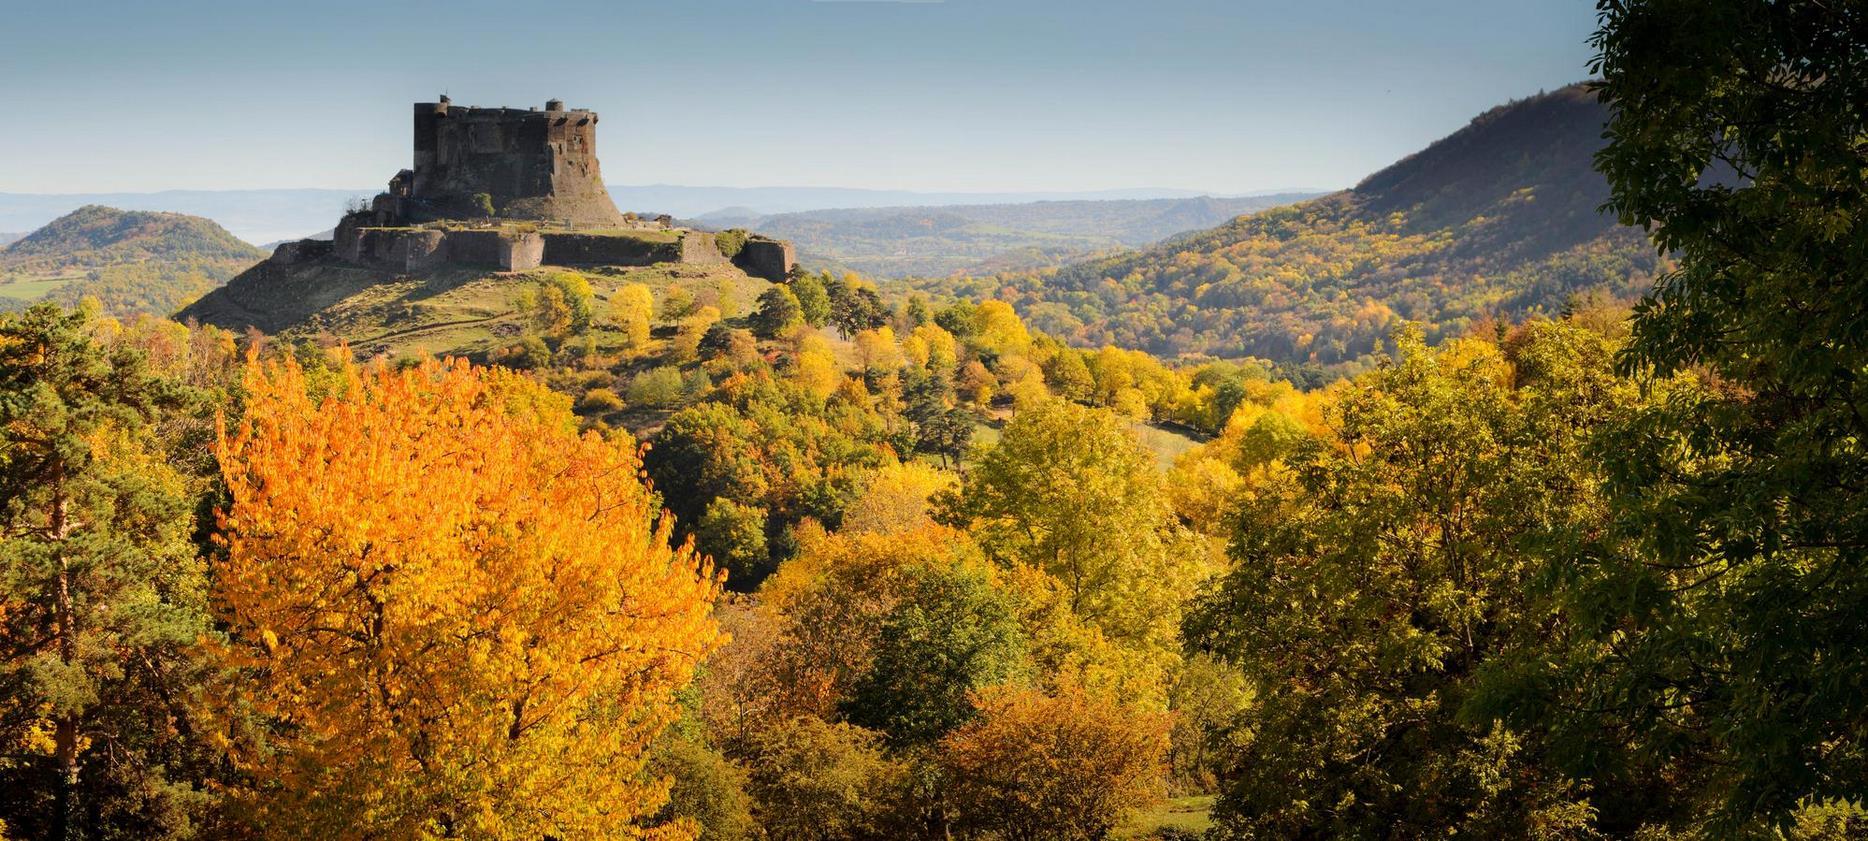 Le Chateau de Murol dominant la vallee de Murol en Automne